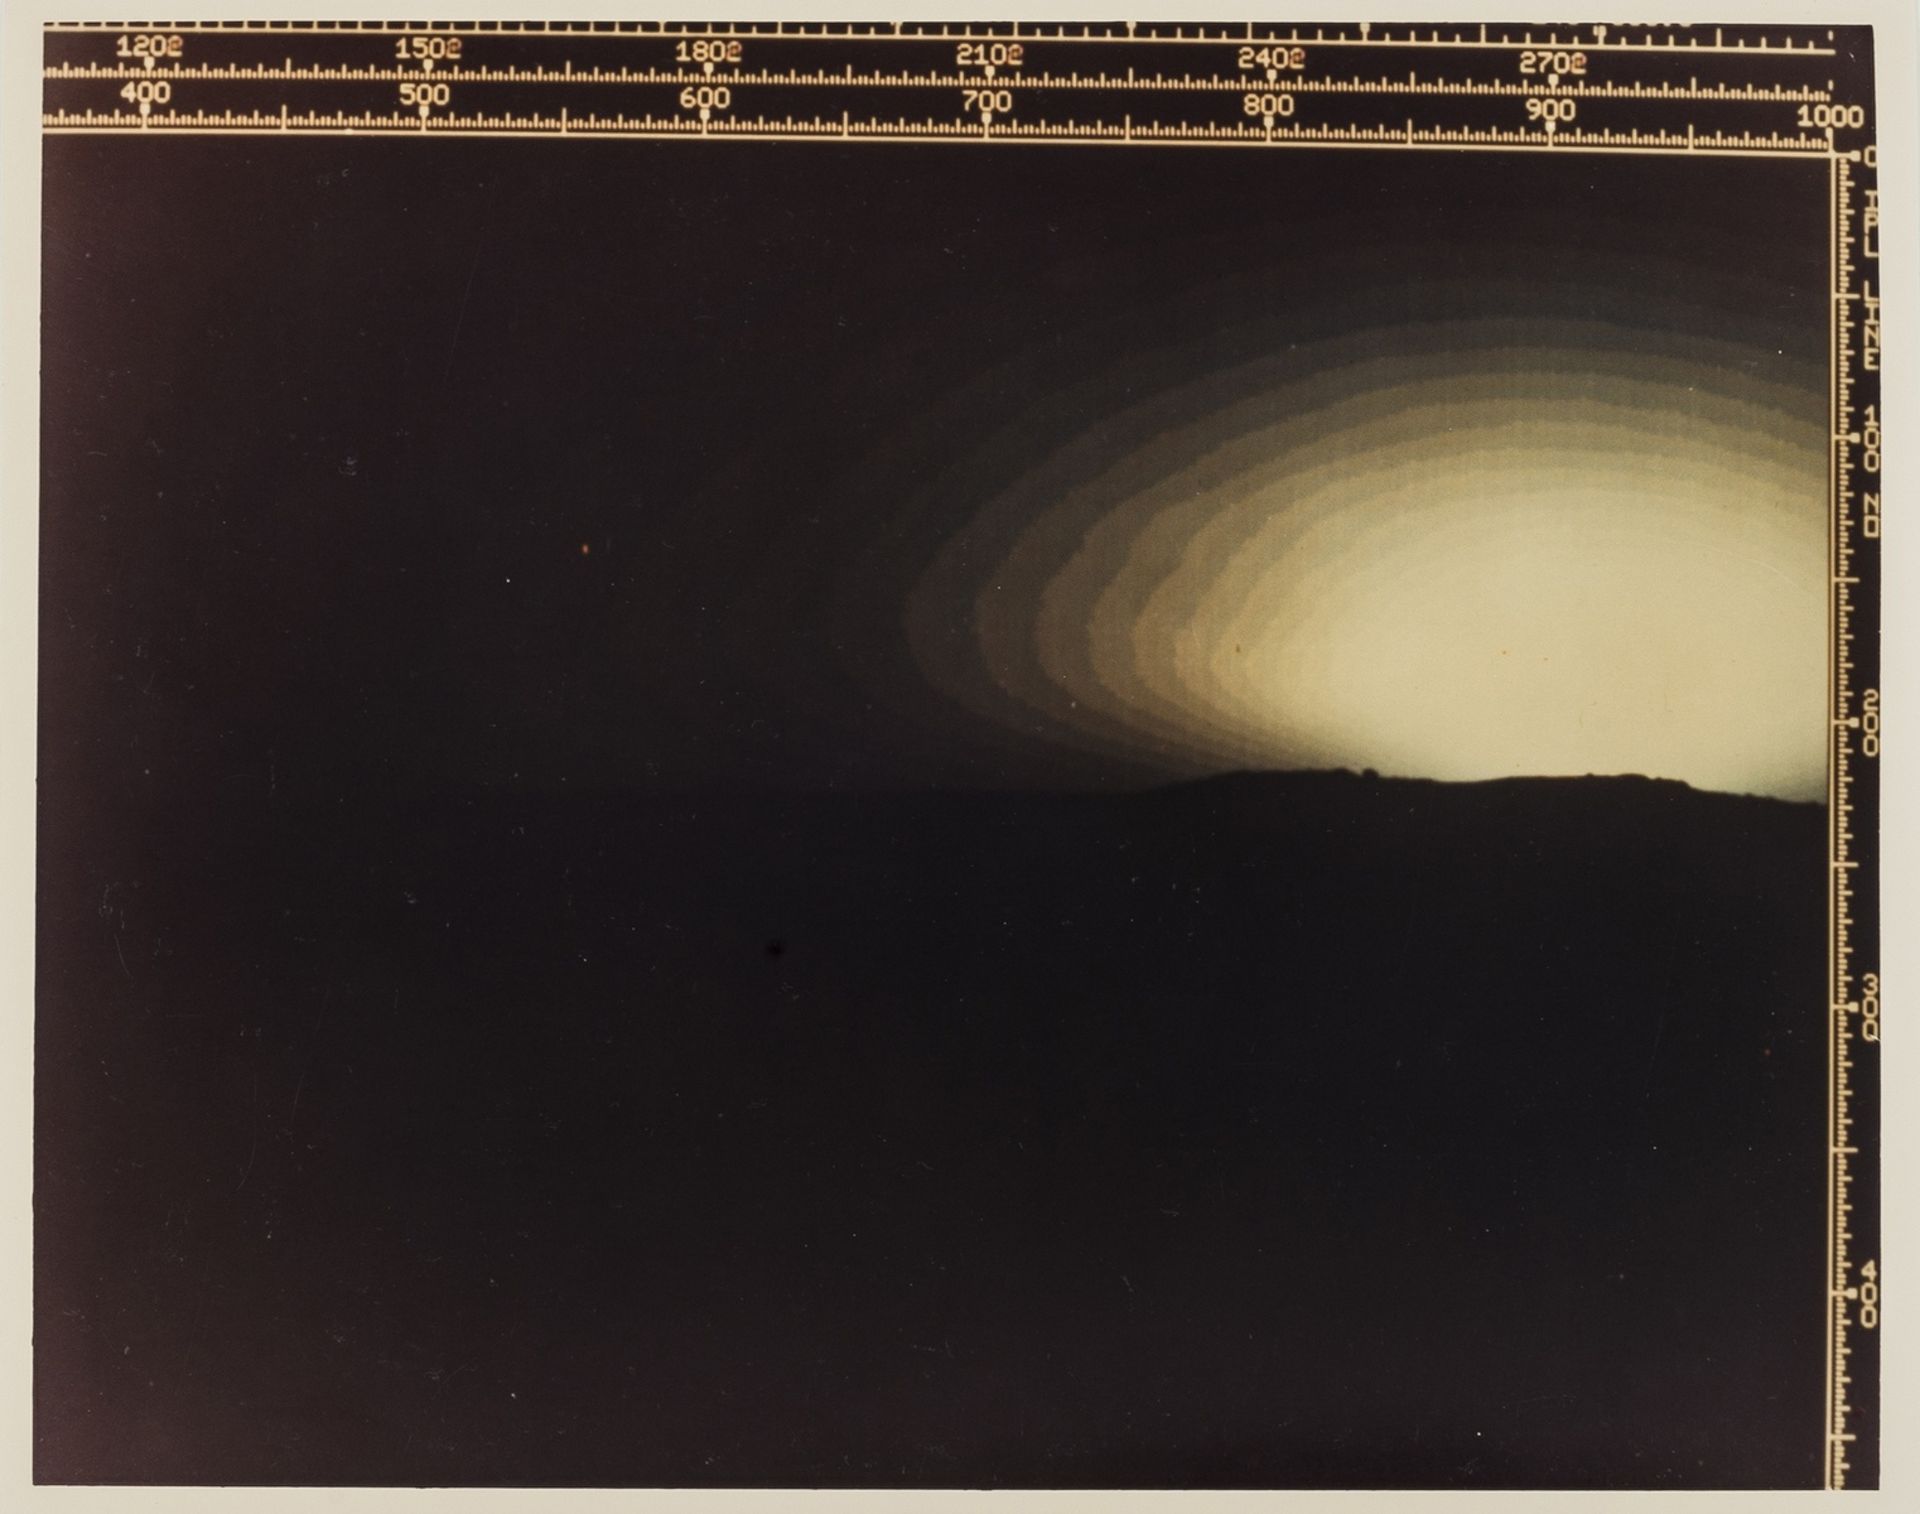 Martian Sunset, vintage chromogenic print, 30 August 1976.